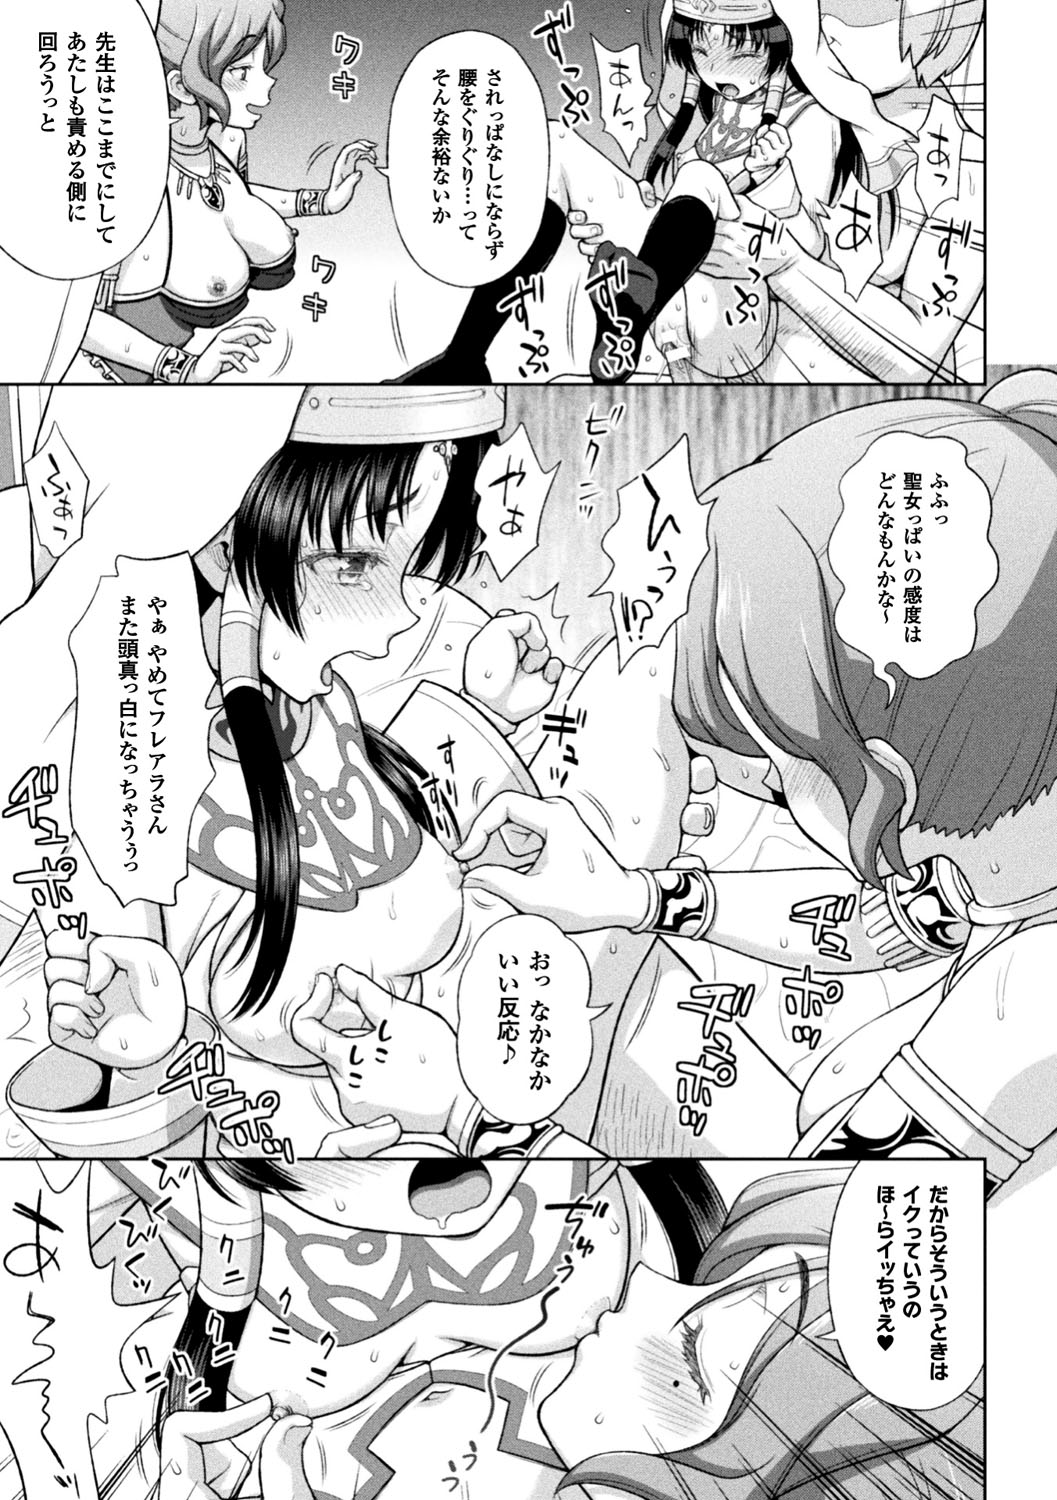 [Anthology] Seigi no Heroine Kangoku File Vol. 12 [Digital] page 23 full